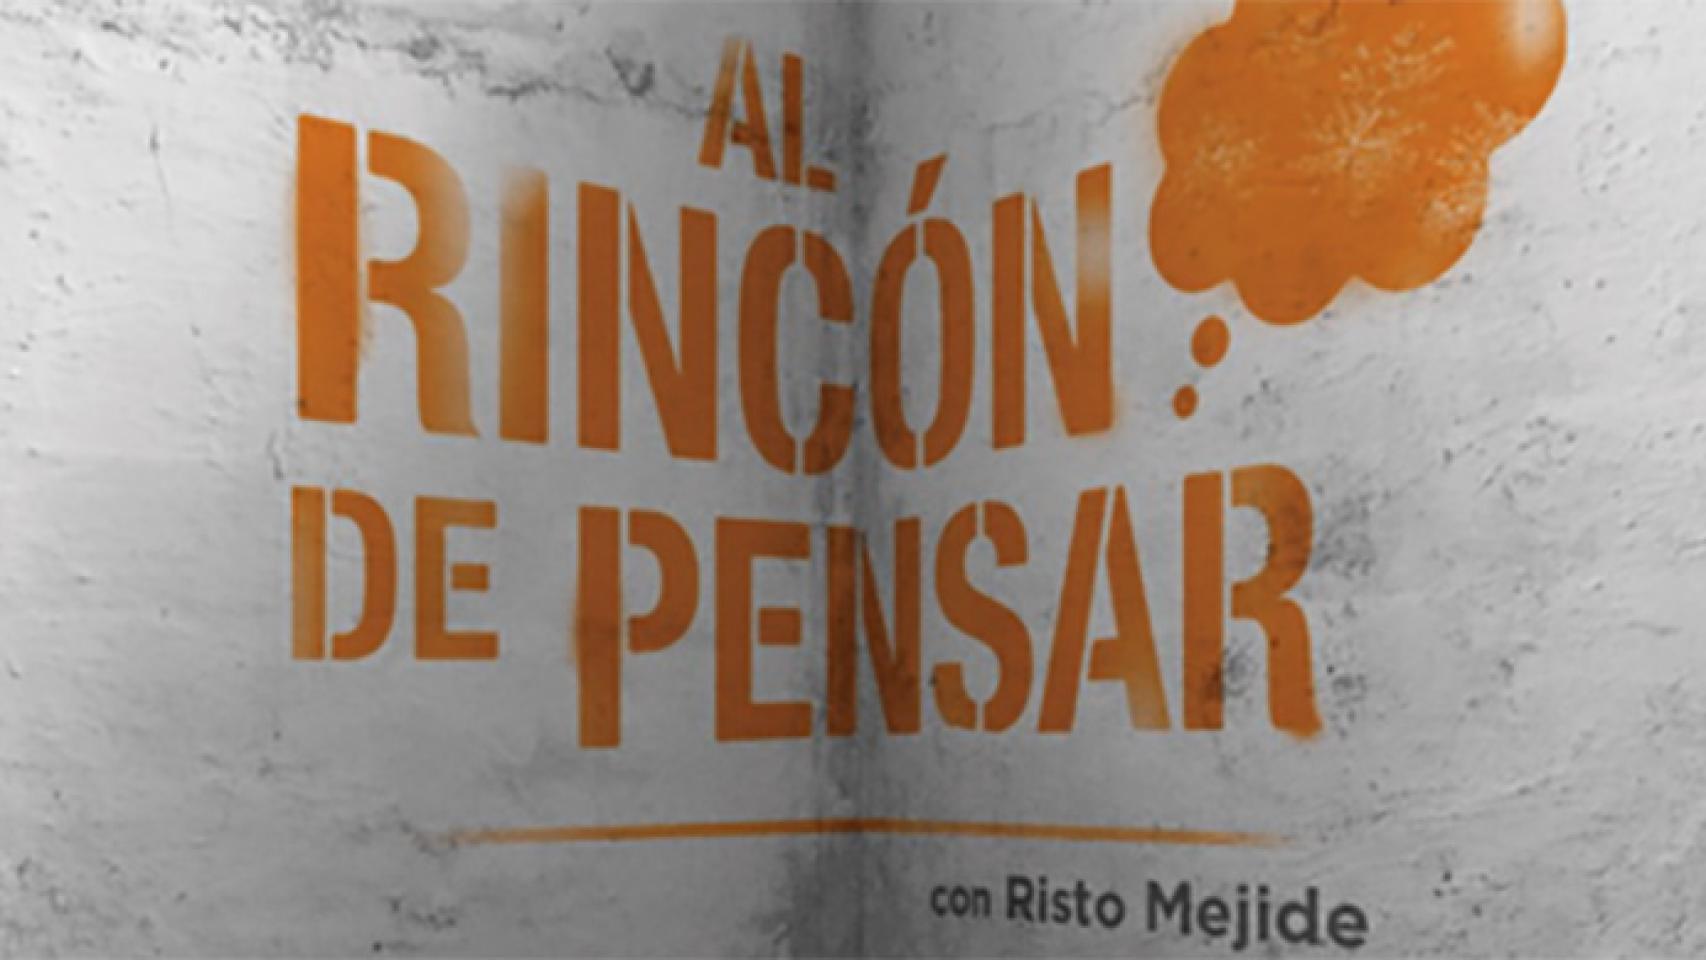 'Al rincón de pensar', título del programa de Risto Mejide en Antena 3